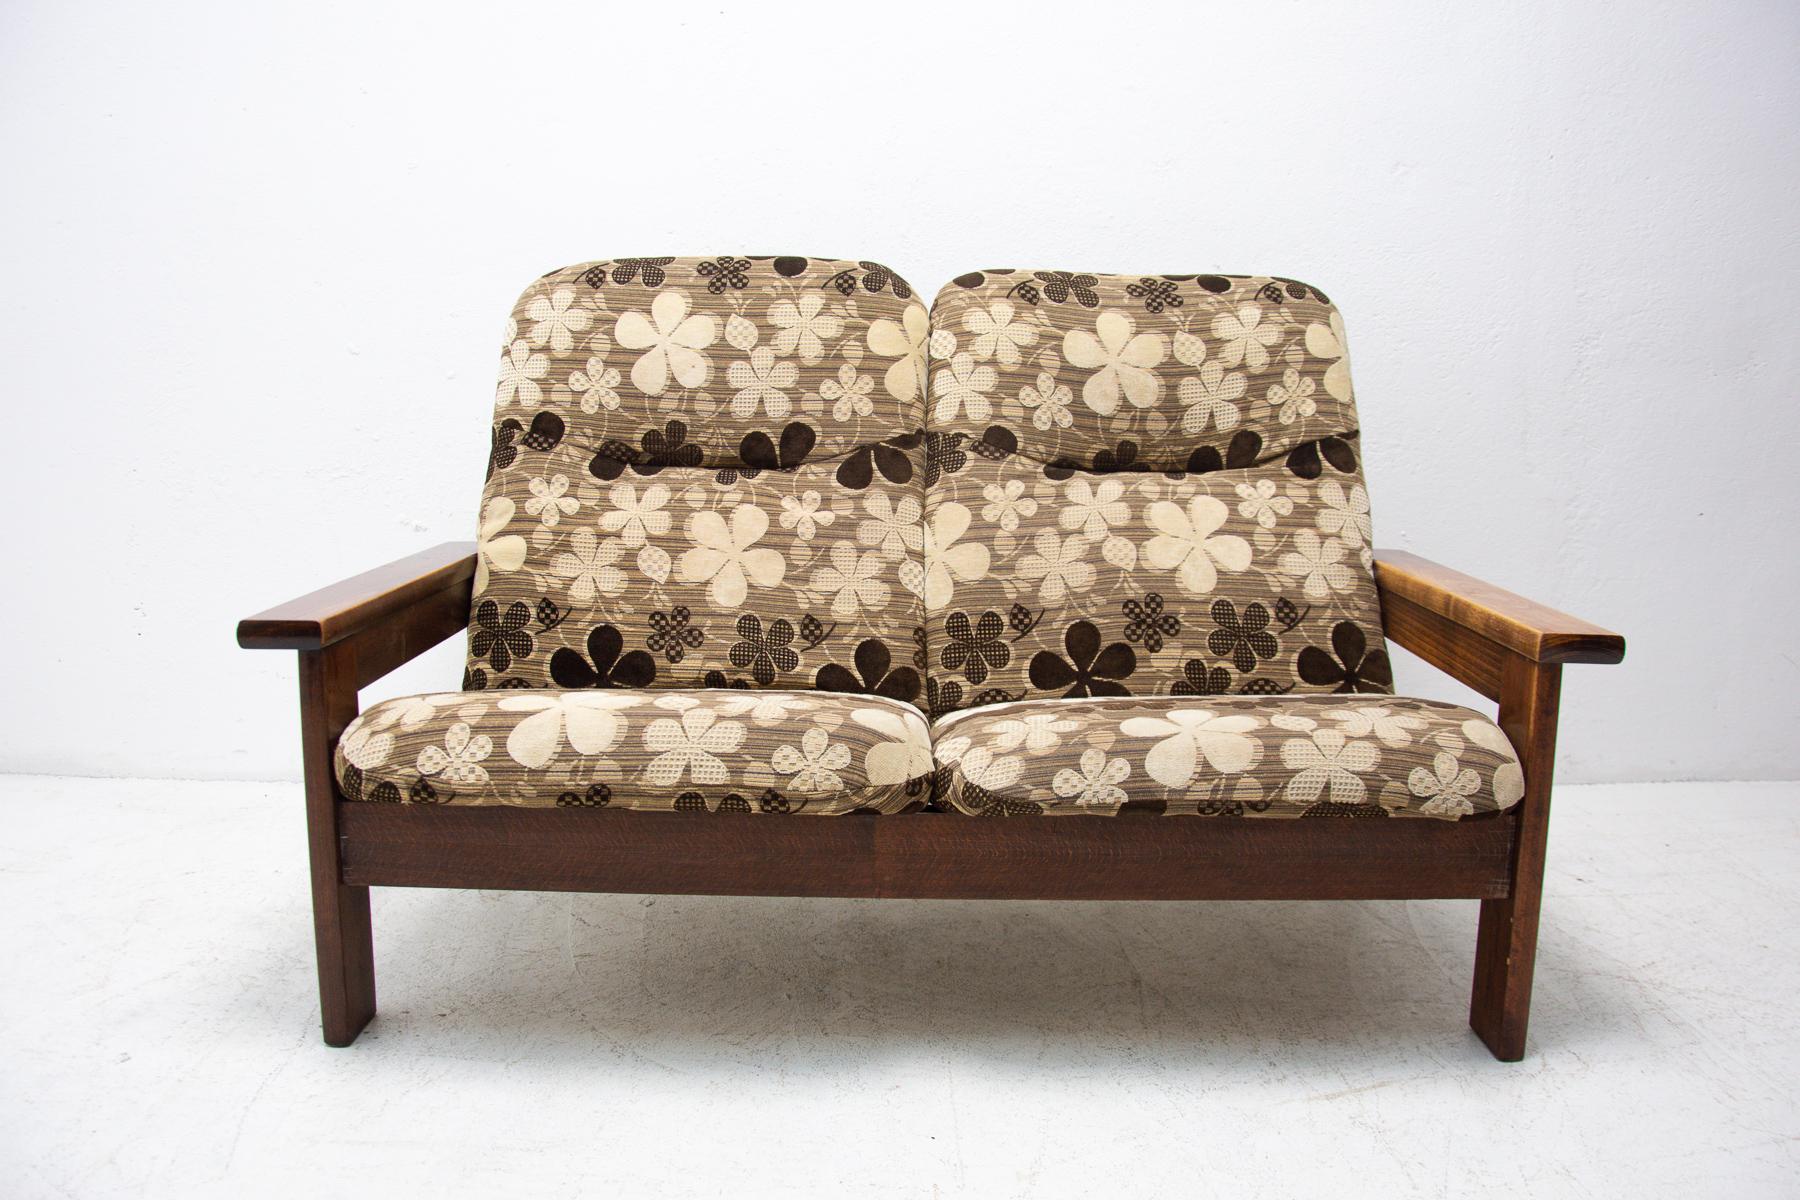 Ce canapé de style scandinave a été fabriqué dans les années 1980. C'est tapissé de tissu. La structure est en bois de hêtre. En très bon état vintage.

Dimensions : Hauteur du siège : 37 cm.